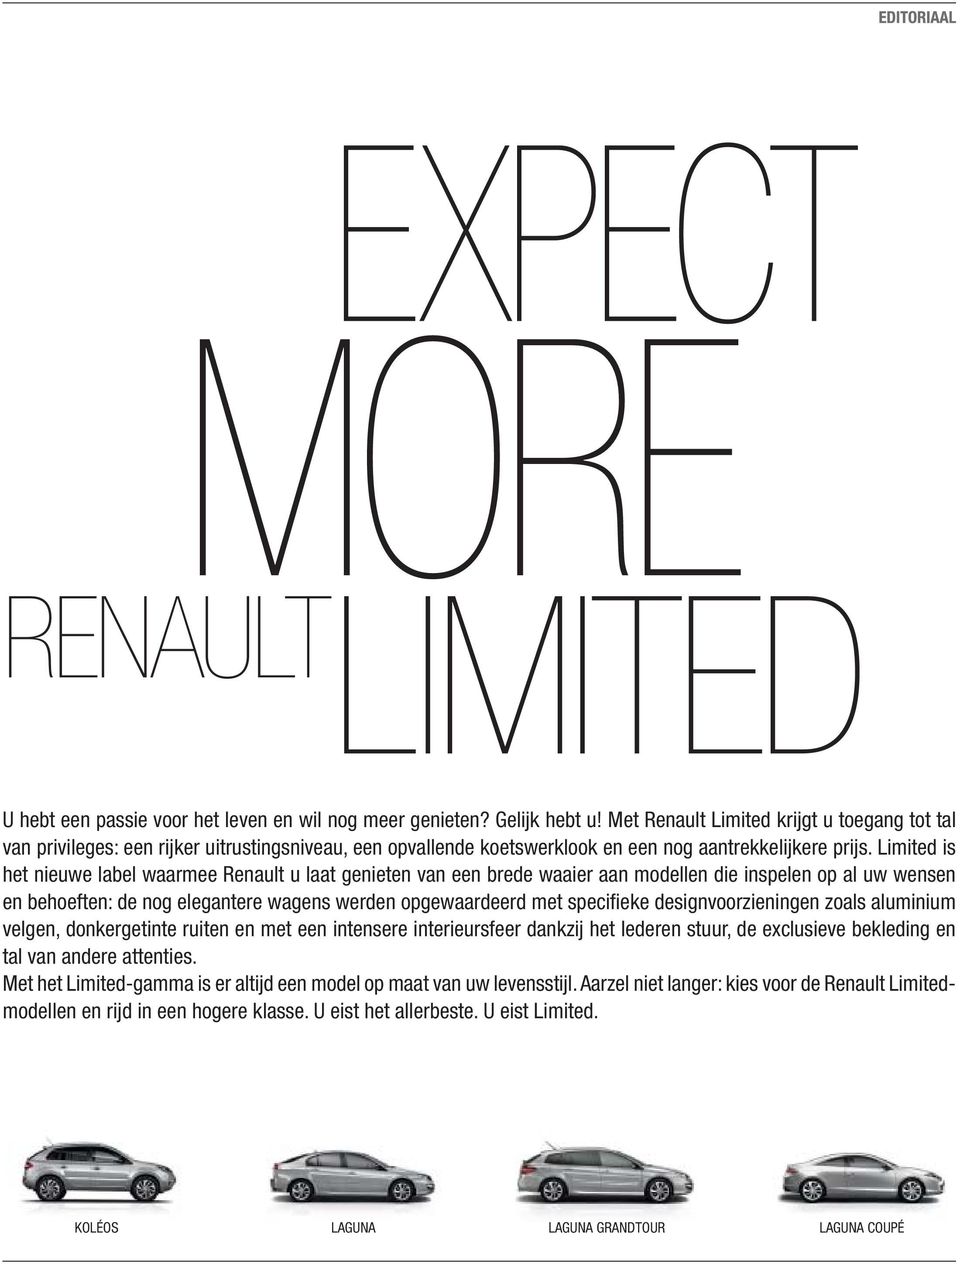 Limited is het nieuwe label waarmee Renault u laat genieten van een brede waaier aan modellen die inspelen op al uw wensen en behoeften: de nog elegantere wagens werden opgewaardeerd met specifieke